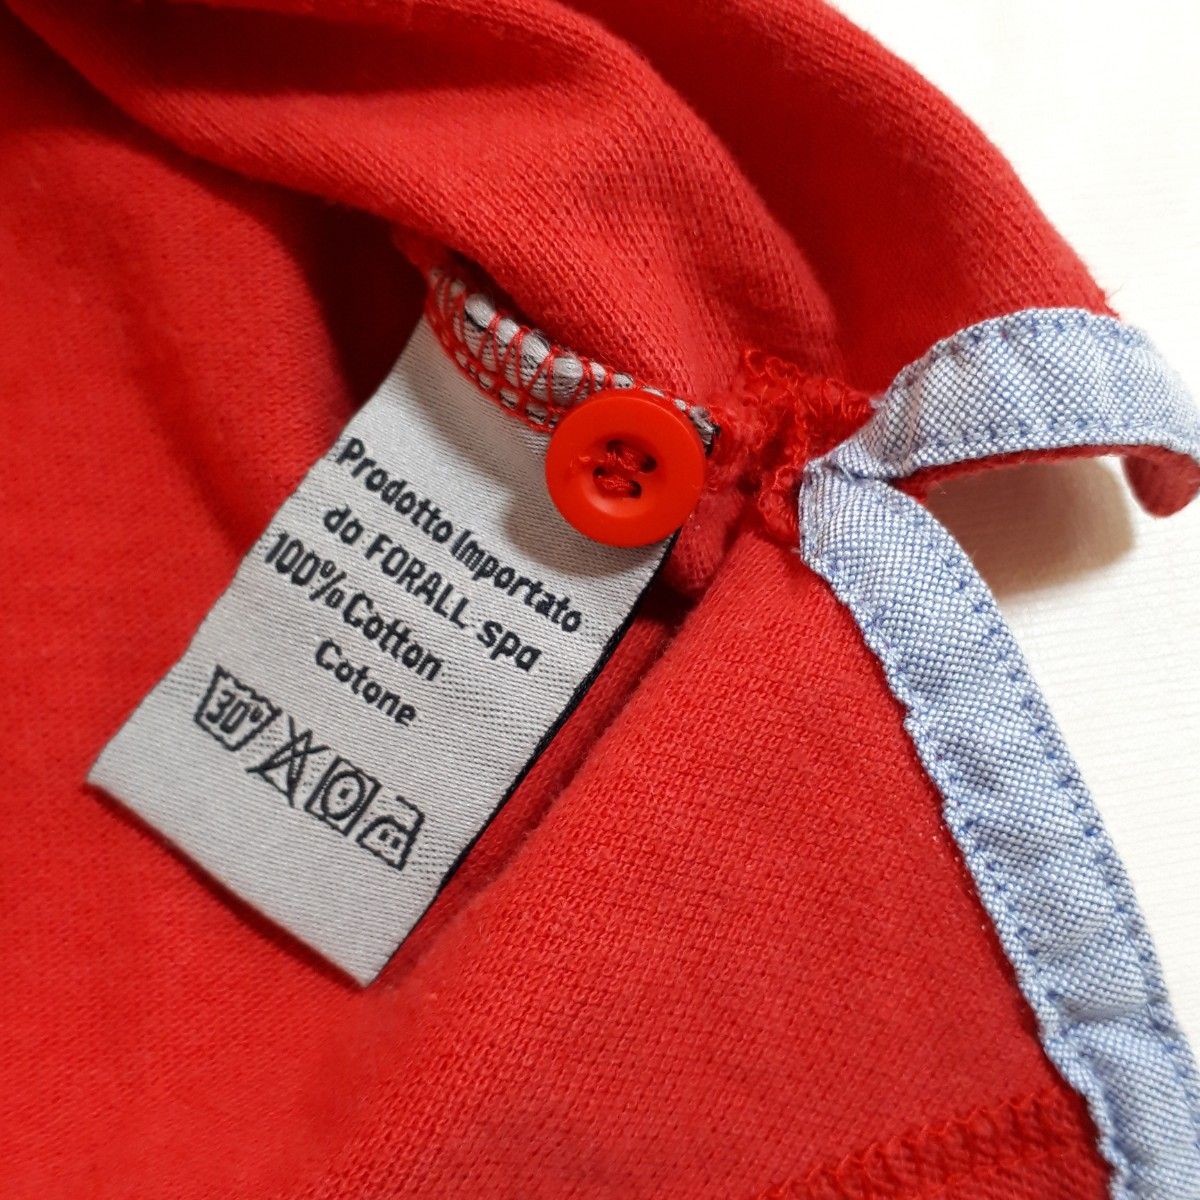 パルジレリ メンズ 半袖ポロシャツ L レッド 赤 イタリア